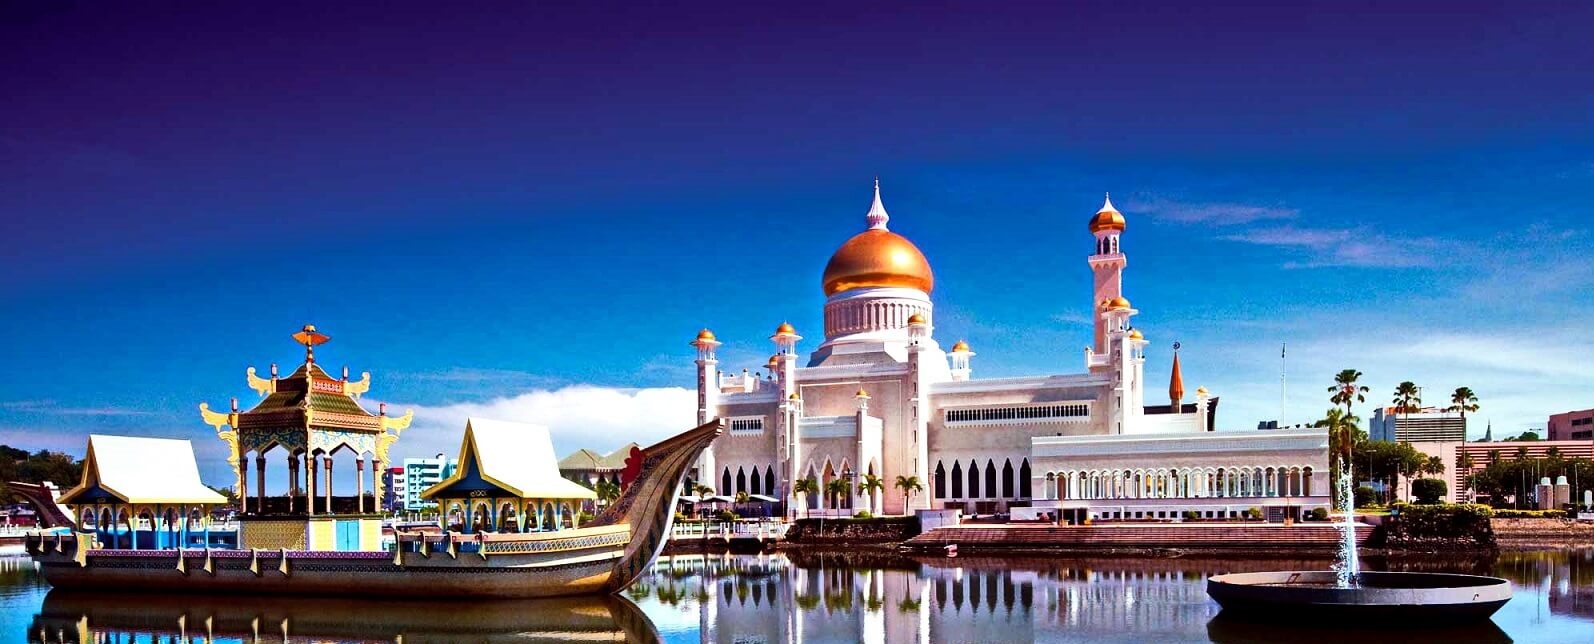 Du lịch Tết Âm lịch 2020 Tour Brunei - Nhật Bản từ Sài Gòn giá tốt